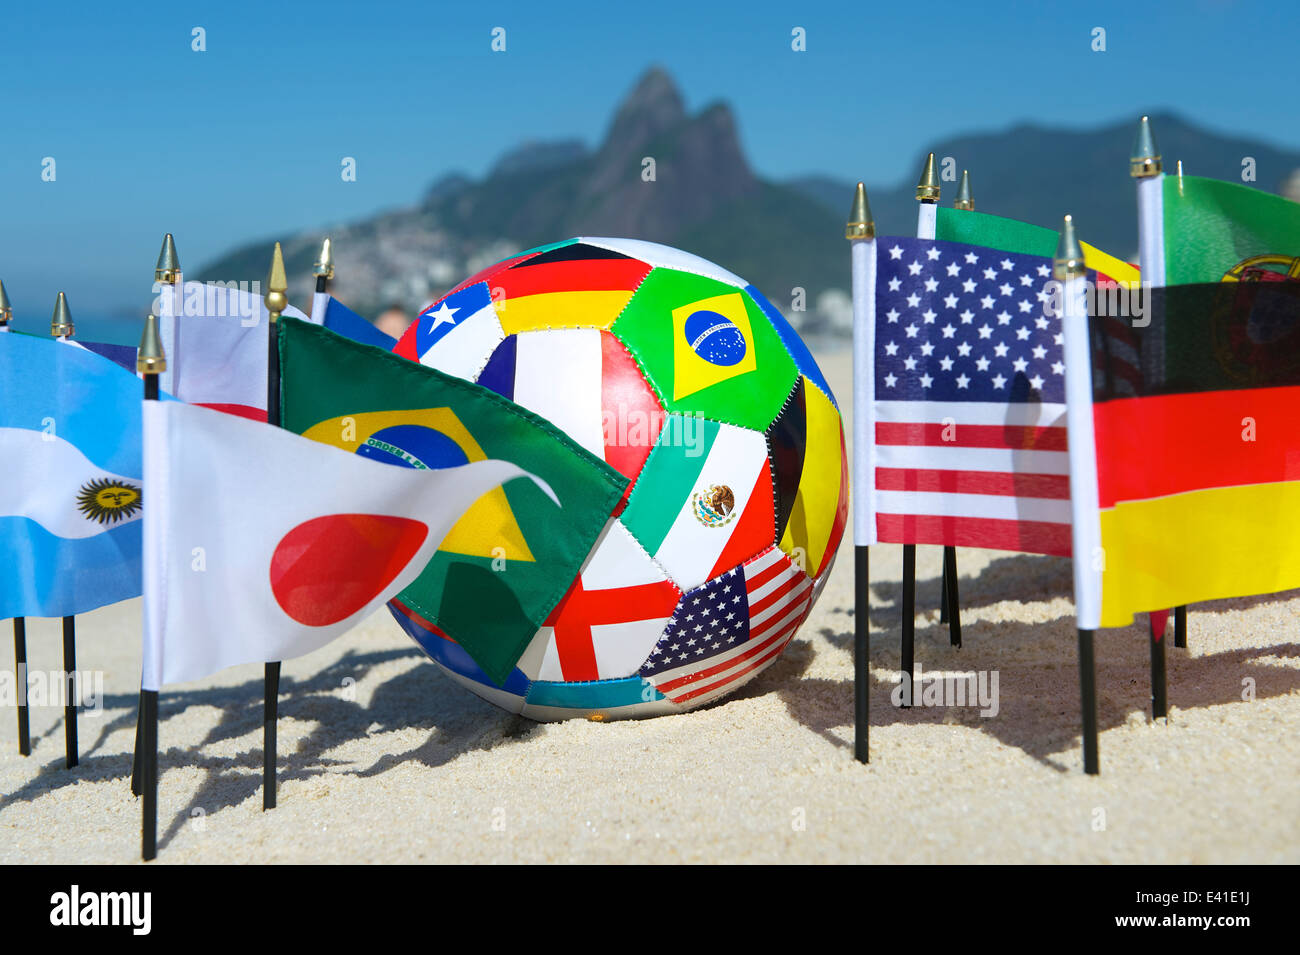 Les drapeaux des pays internationaux de football avec ballon de soccer sur la plage d'Ipanema à Rio de Janeiro Brésil Banque D'Images